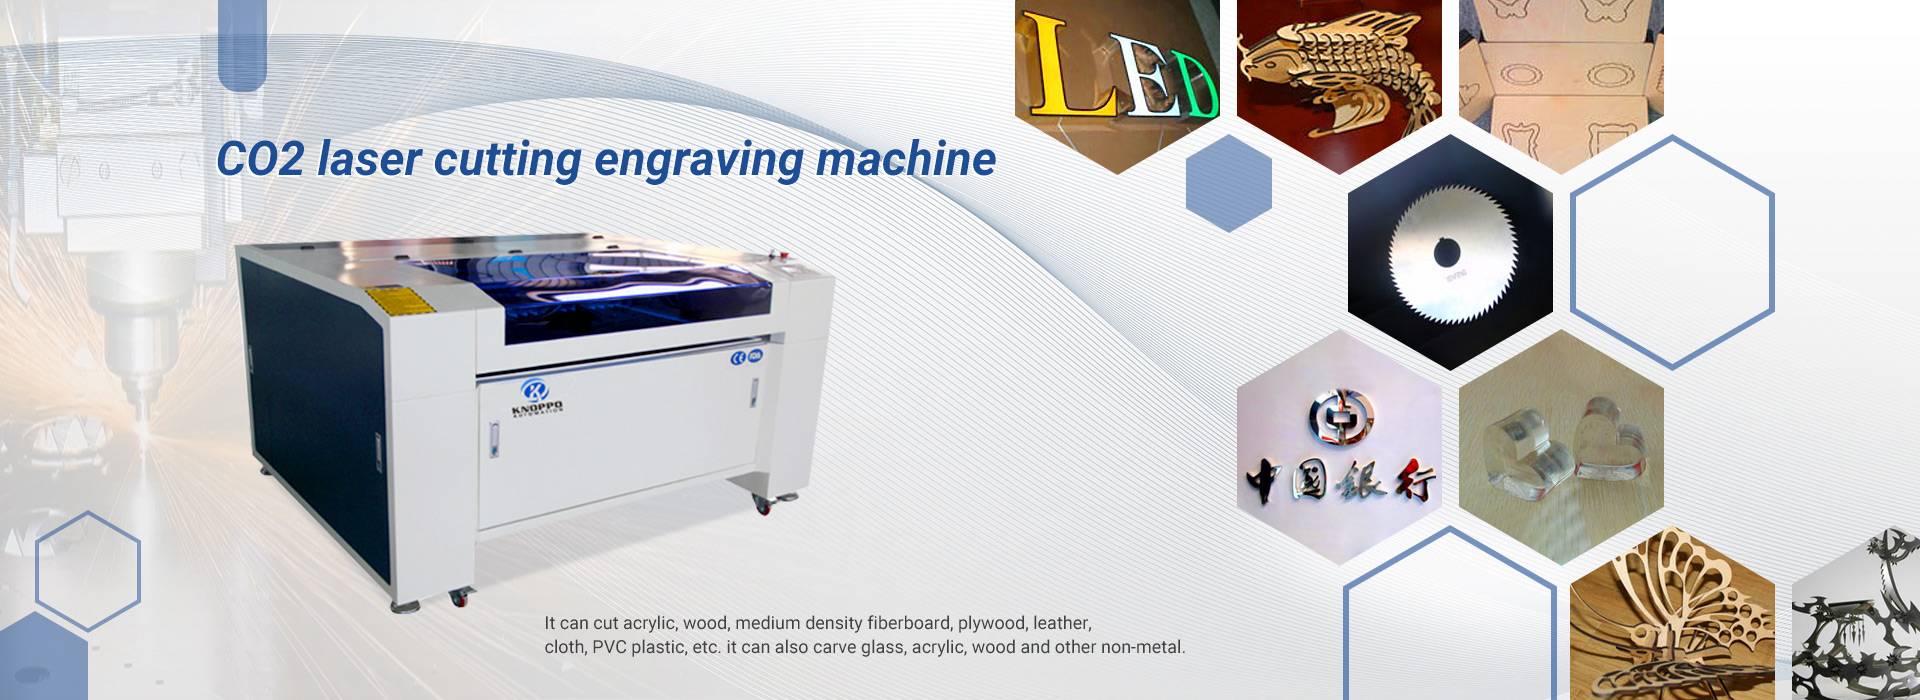 CO2-Laserschneid-Graviermaschine